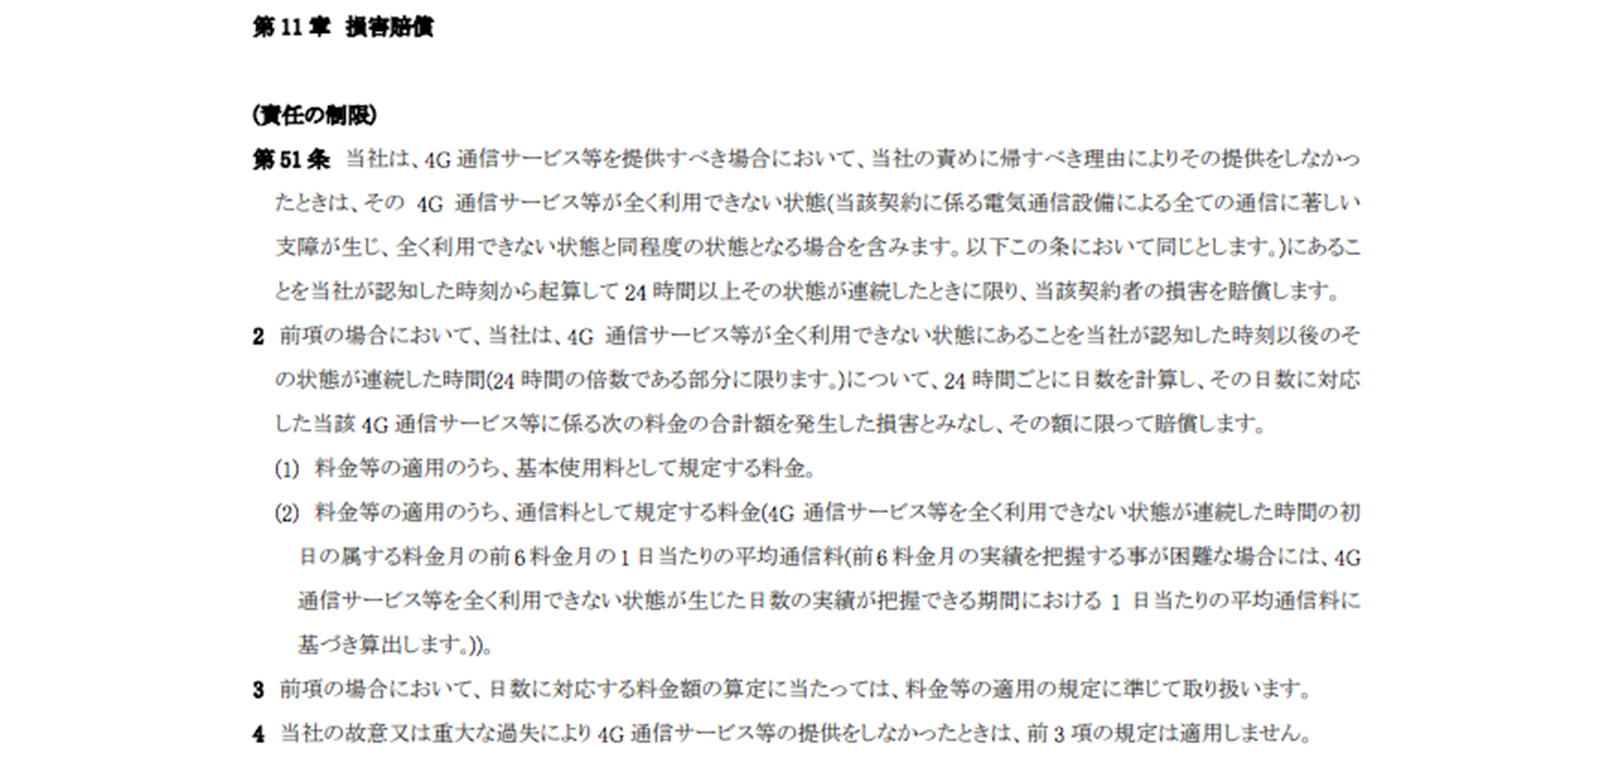 ソフトバンク契約約款 https://www.softbank.jp/mobile/legal/articles/